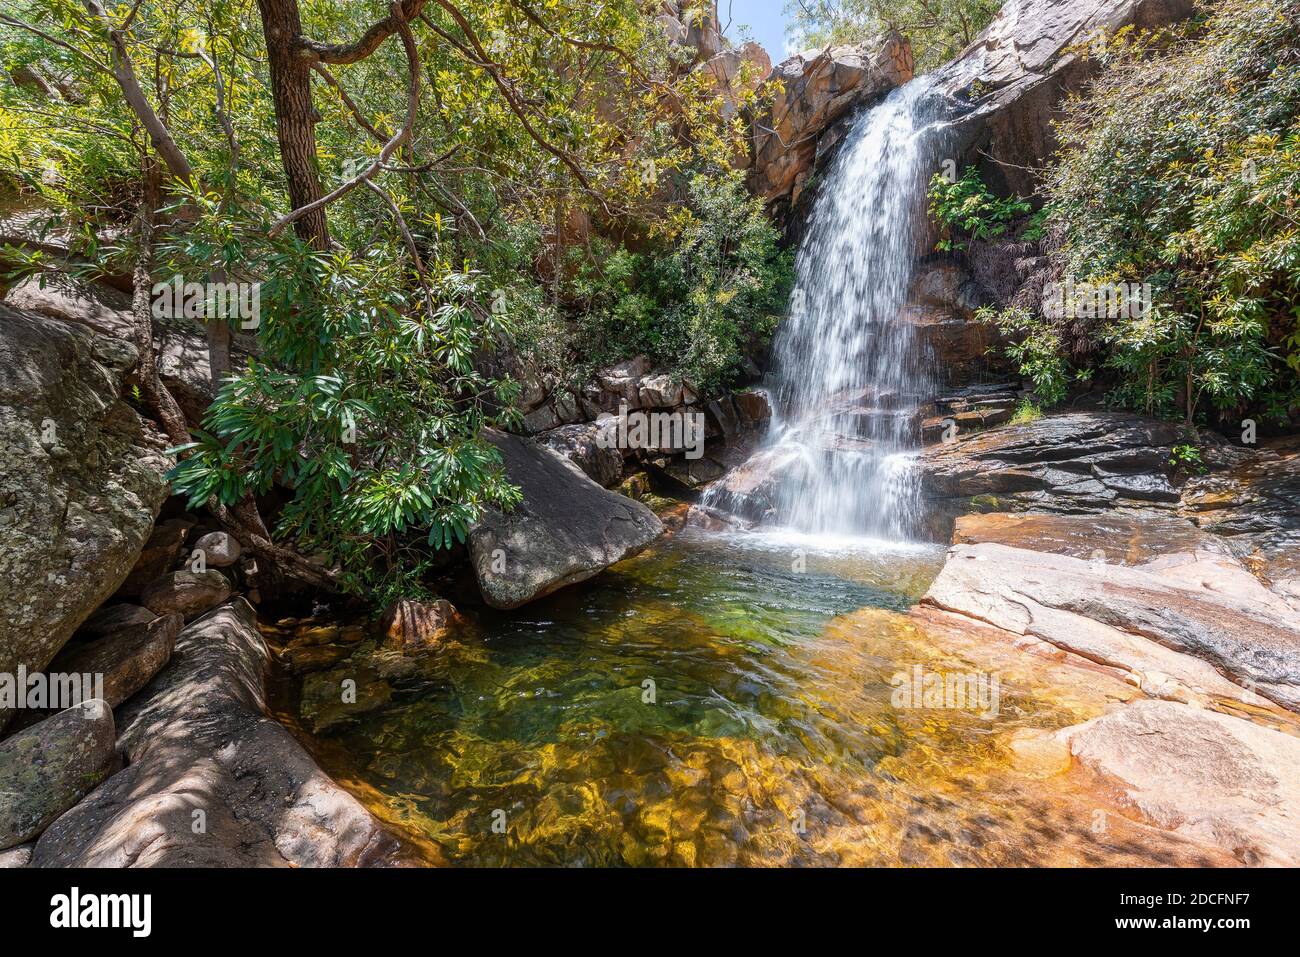 Acque a cascata a Boulder Creek con lussureggiante vegetazione boschiva e alberi caduti nel tropicale territorio del Nord, all'estremità superiore dell'Australia. Foto Stock